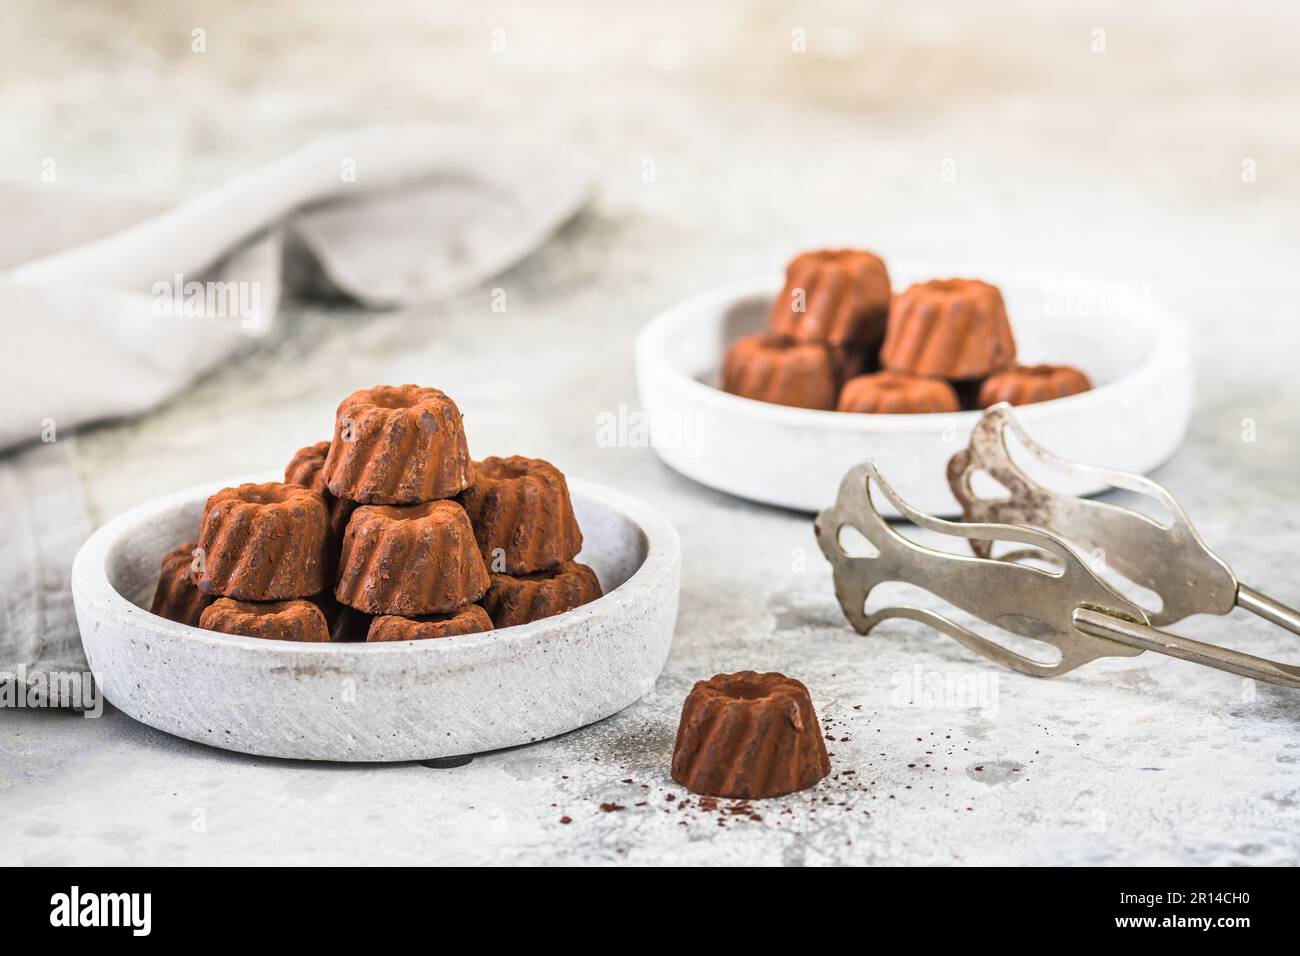 Schokoladenpralinen in Form von kleinen Guglhupf-Törtchen, mit Kakao bestaubt, auf hellgrauem Hintergrund Stockfoto